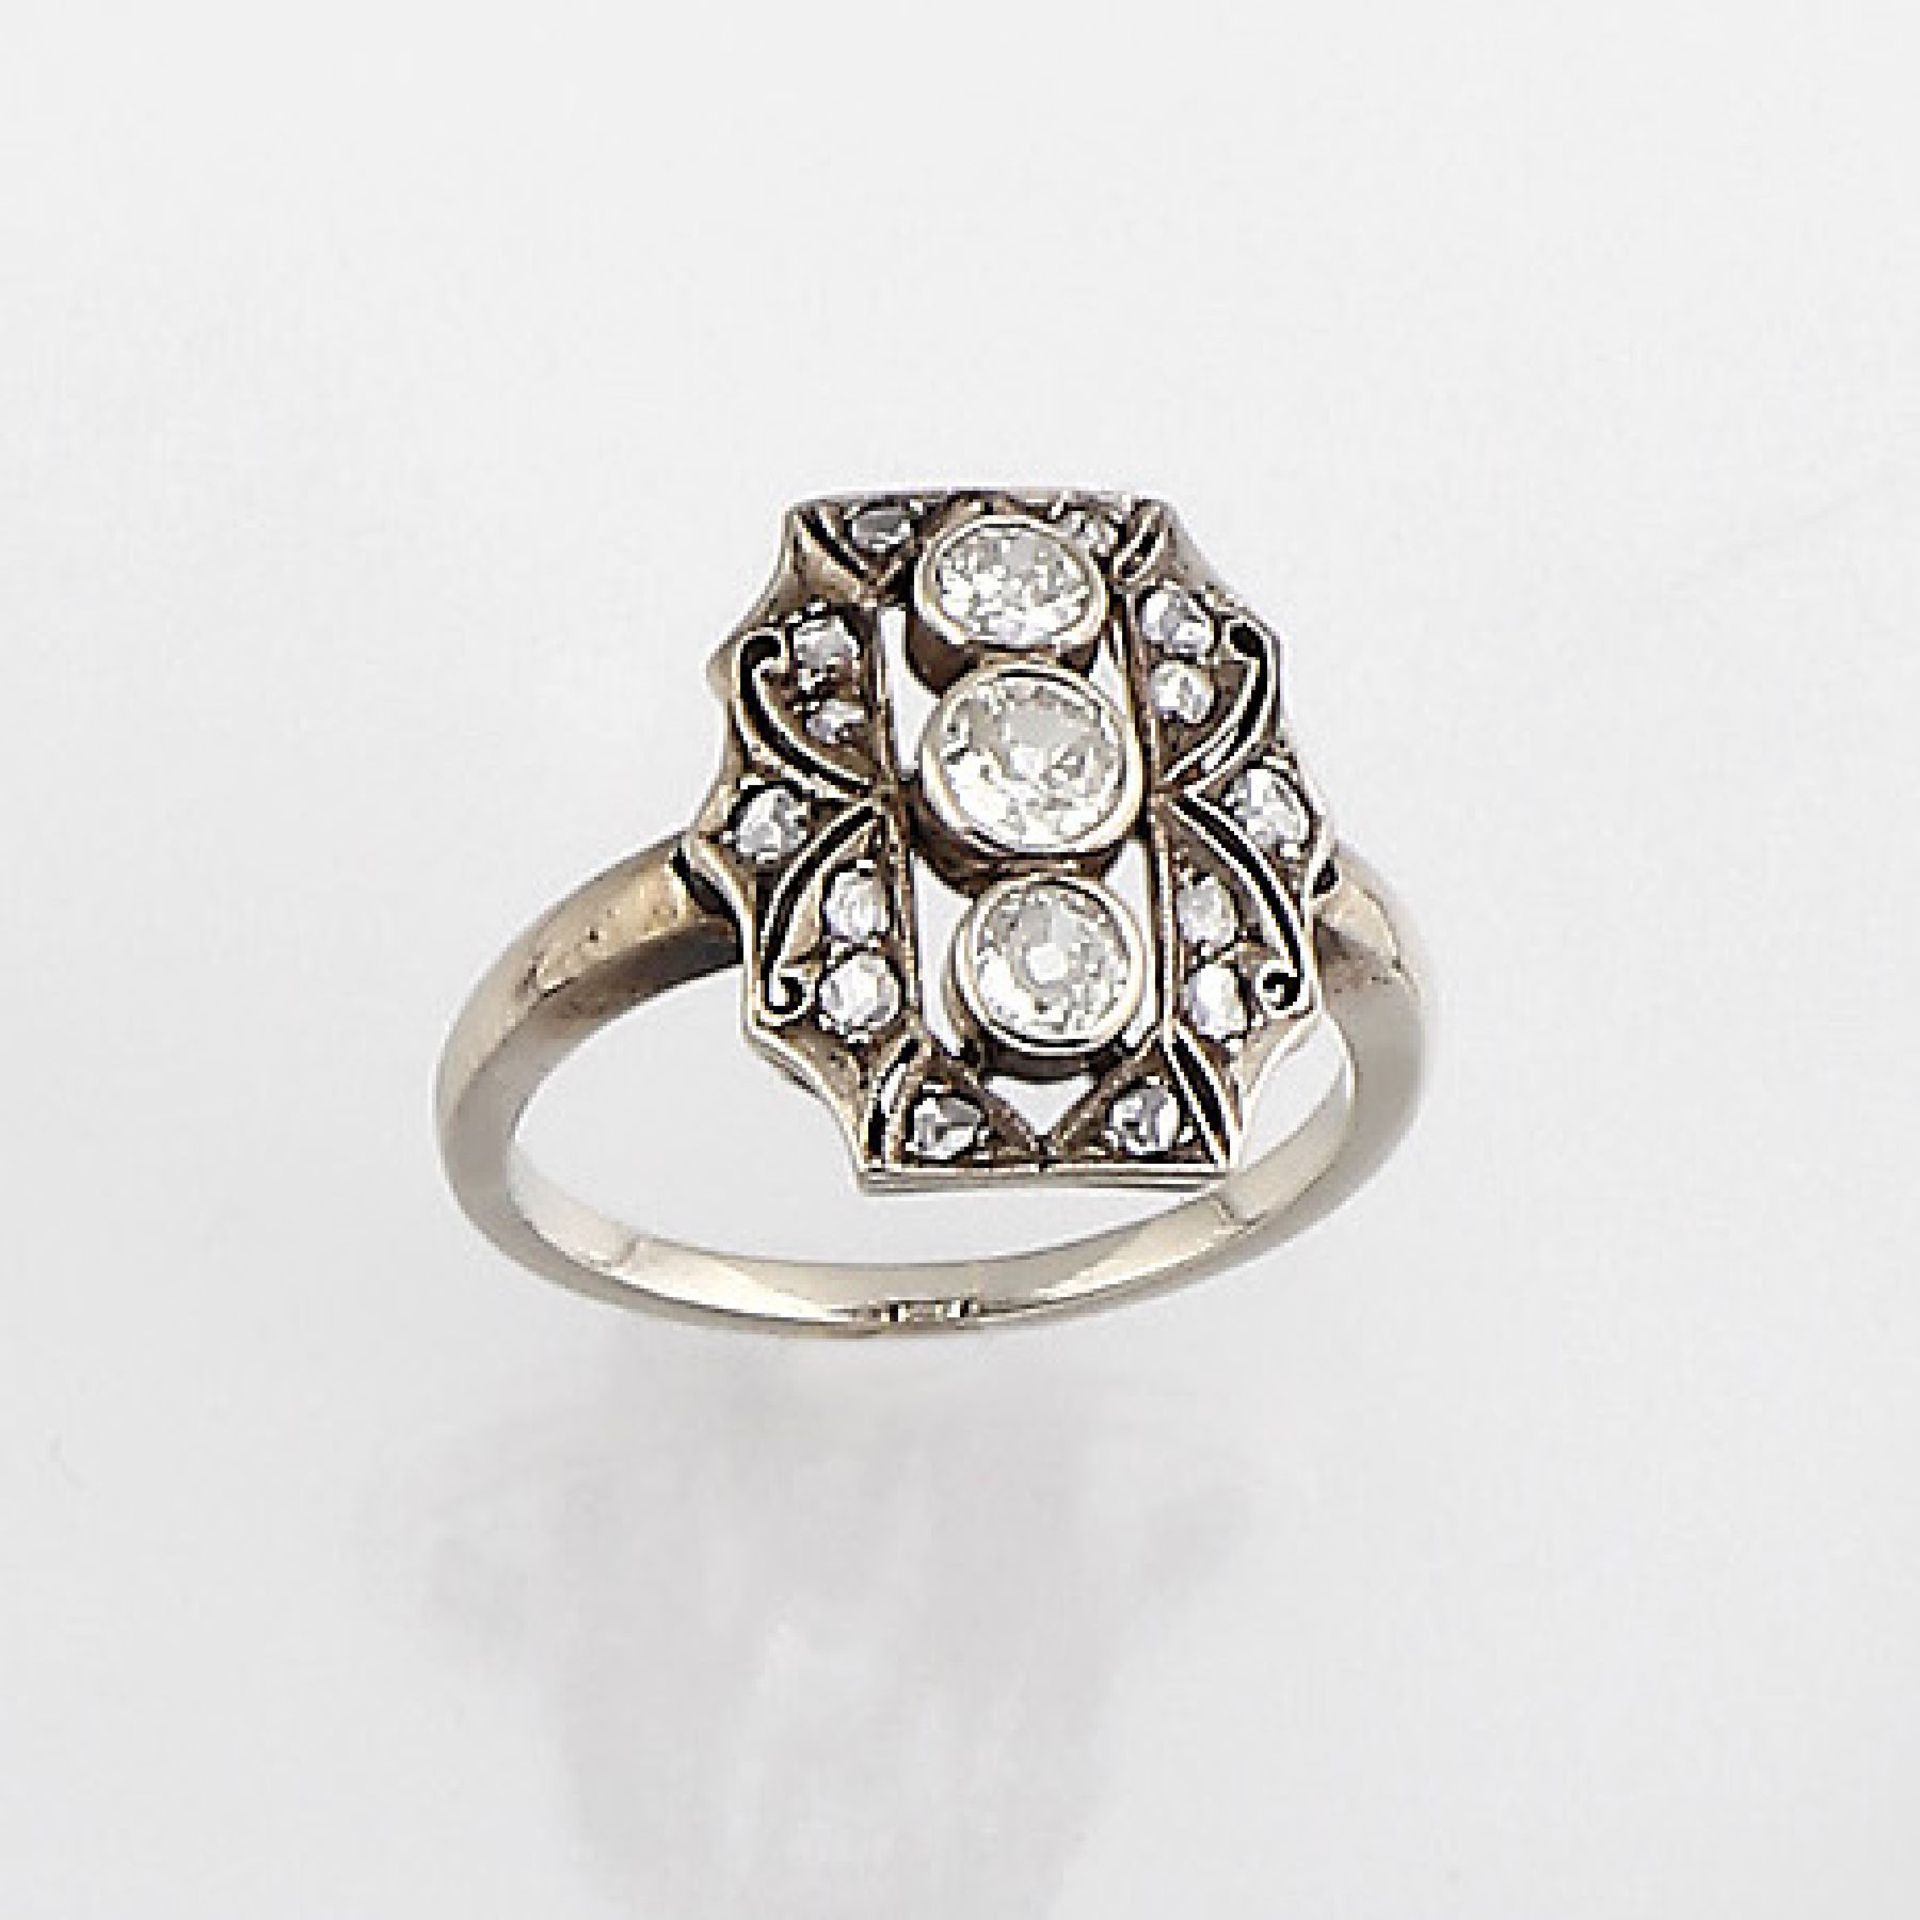 14 kt Gold Art-Deco Ring mit Diamanten, USA um1925, GG 585/000, zeittyp. plat., bes. mit 3